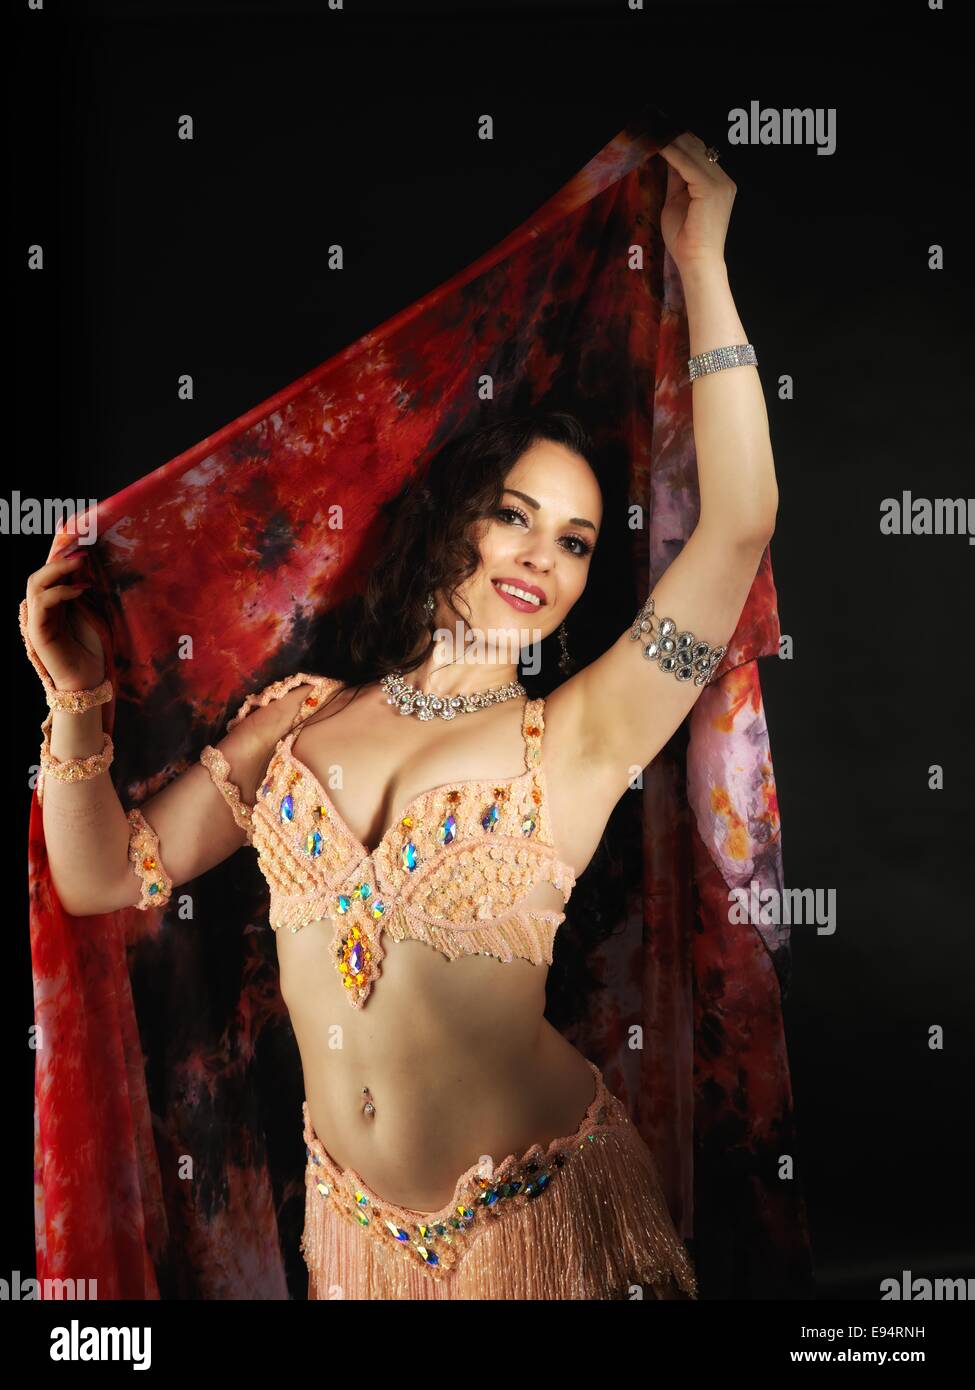 Jeune belle danseuse du ventre portant un costume coloré et un voile rouge, en face de l'arrière-plan noir. Banque D'Images